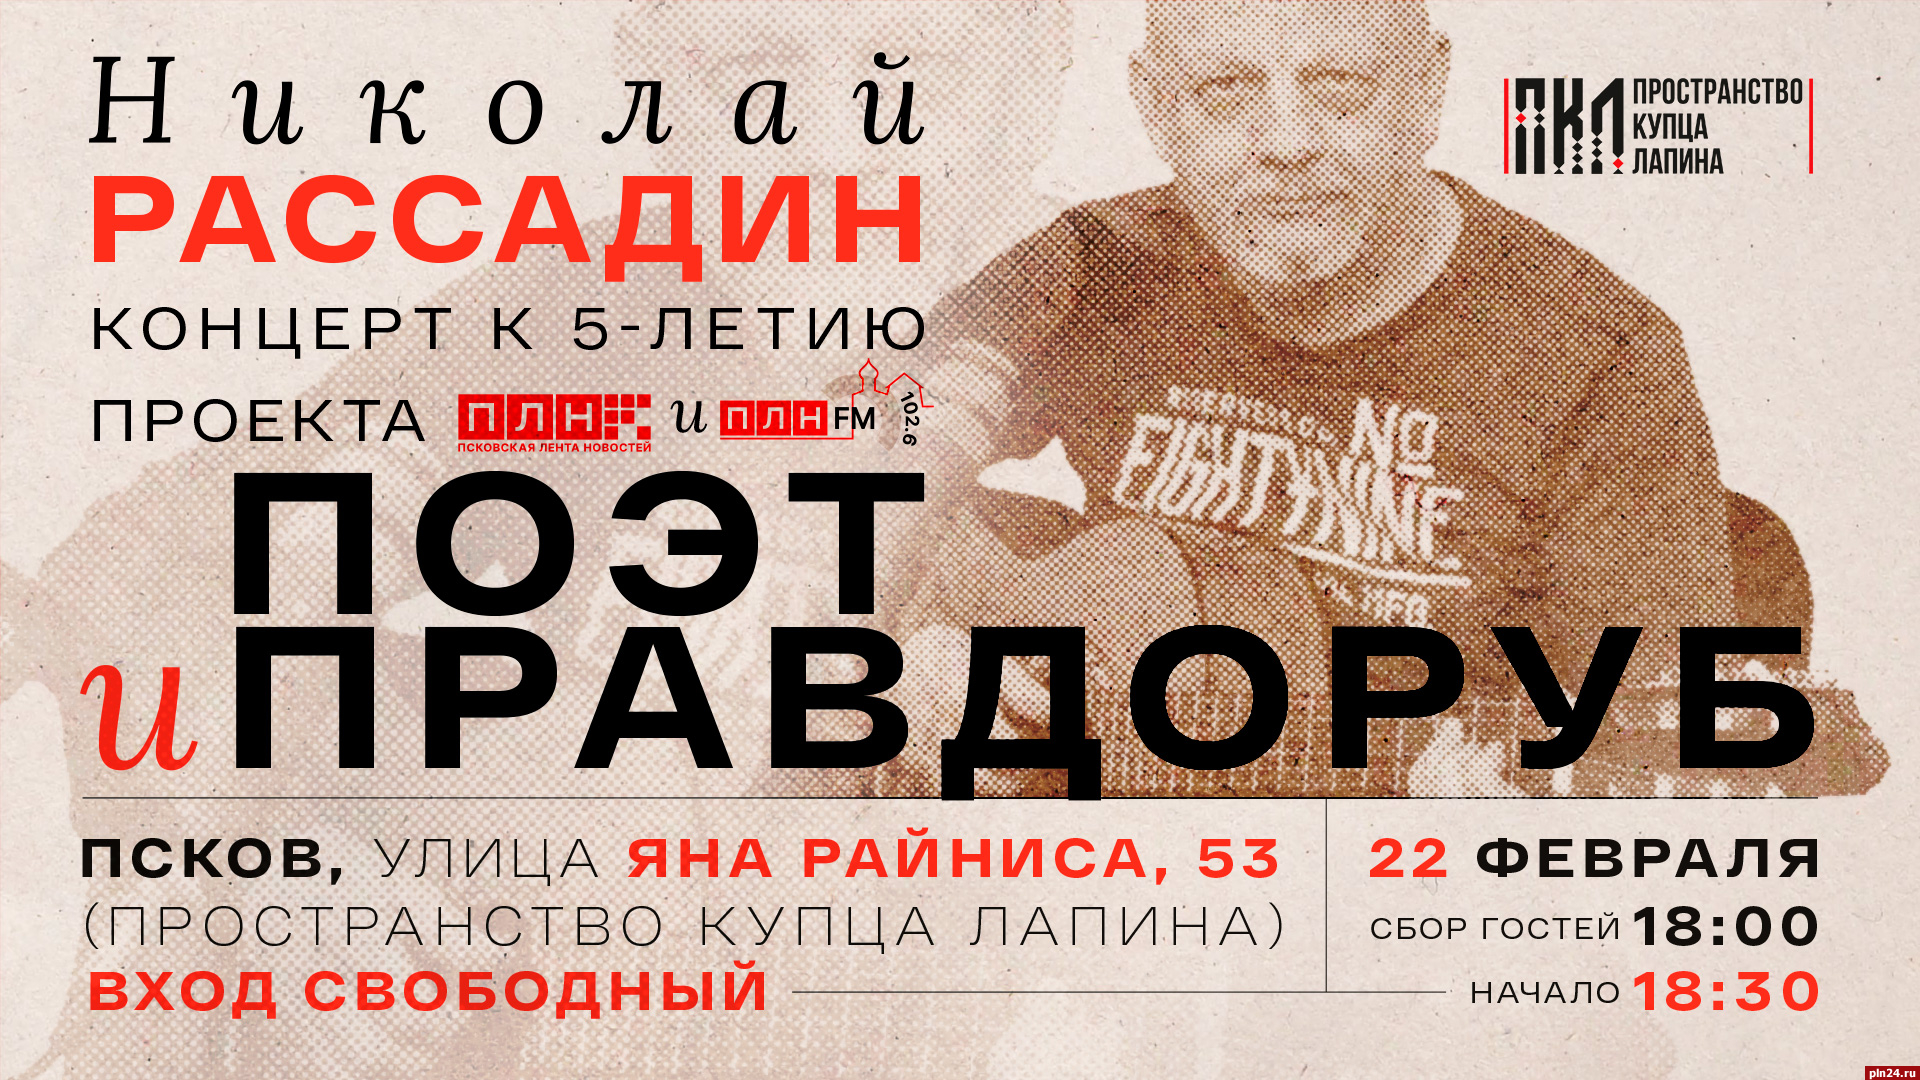 Проекту «Поэт и правдоруб» 5 лет: Николай Рассадин даст концерт в Пскове